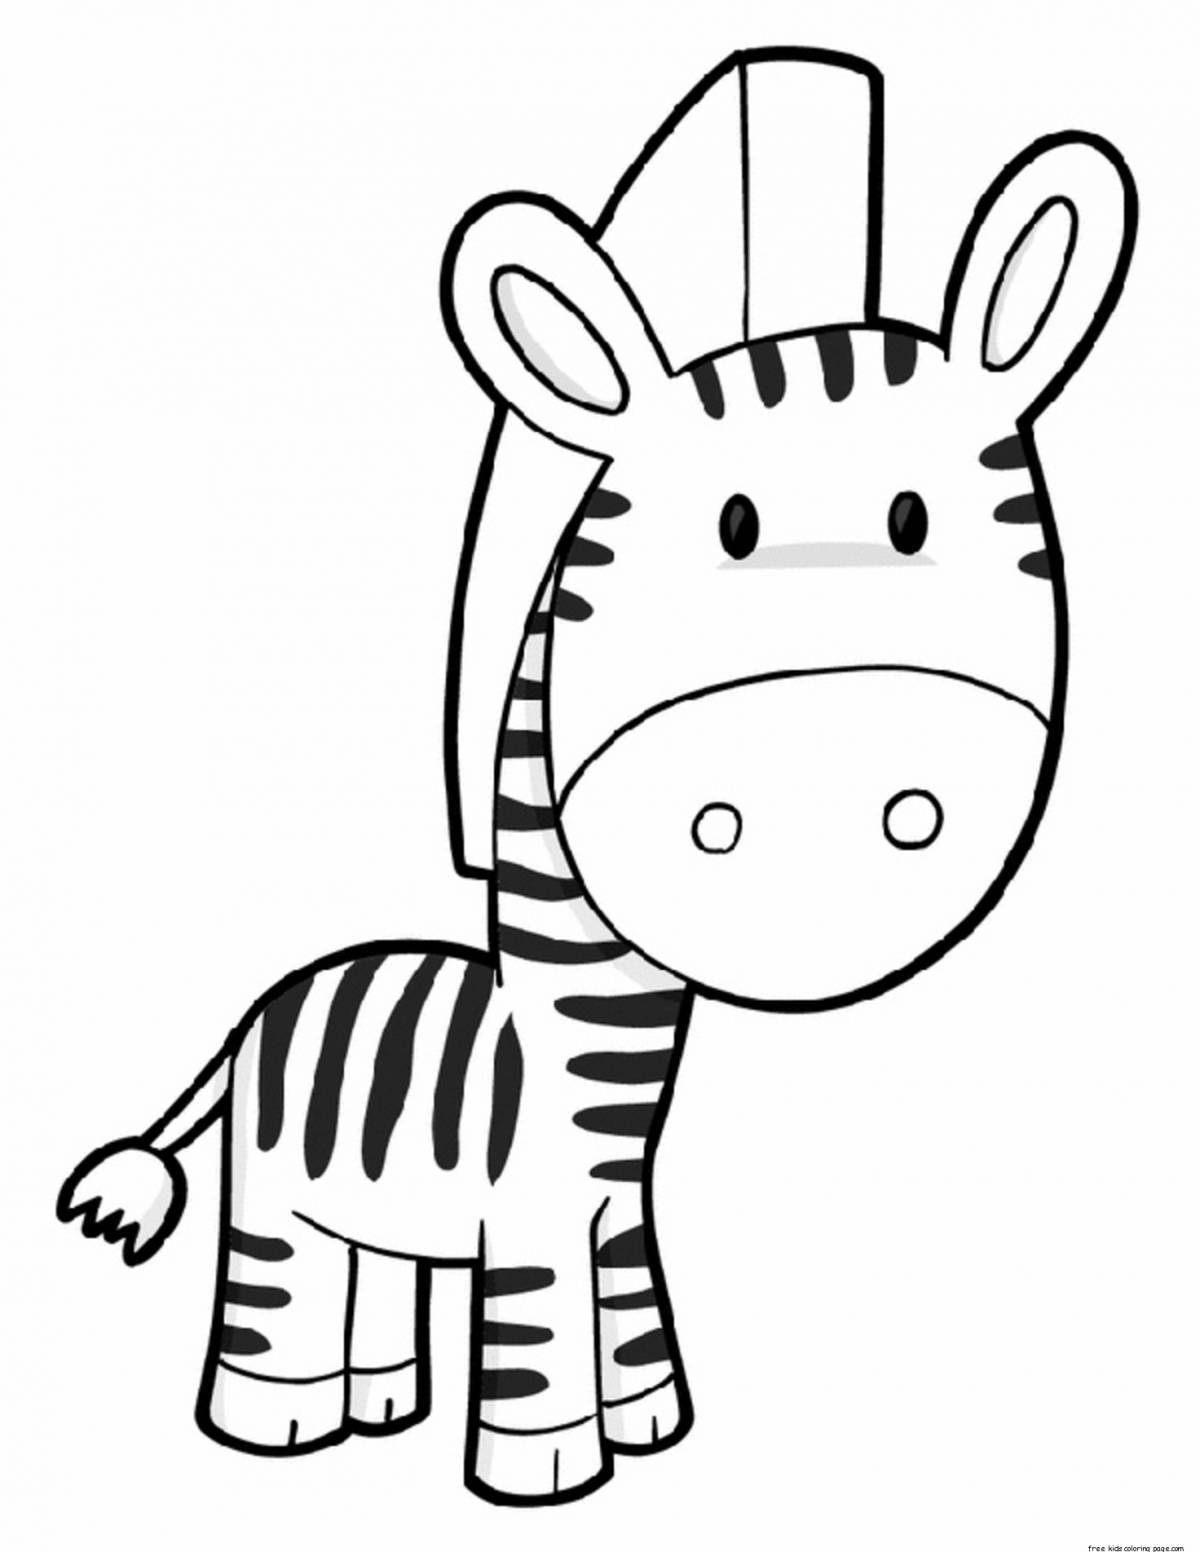 Творческая раскраска зебра для детей